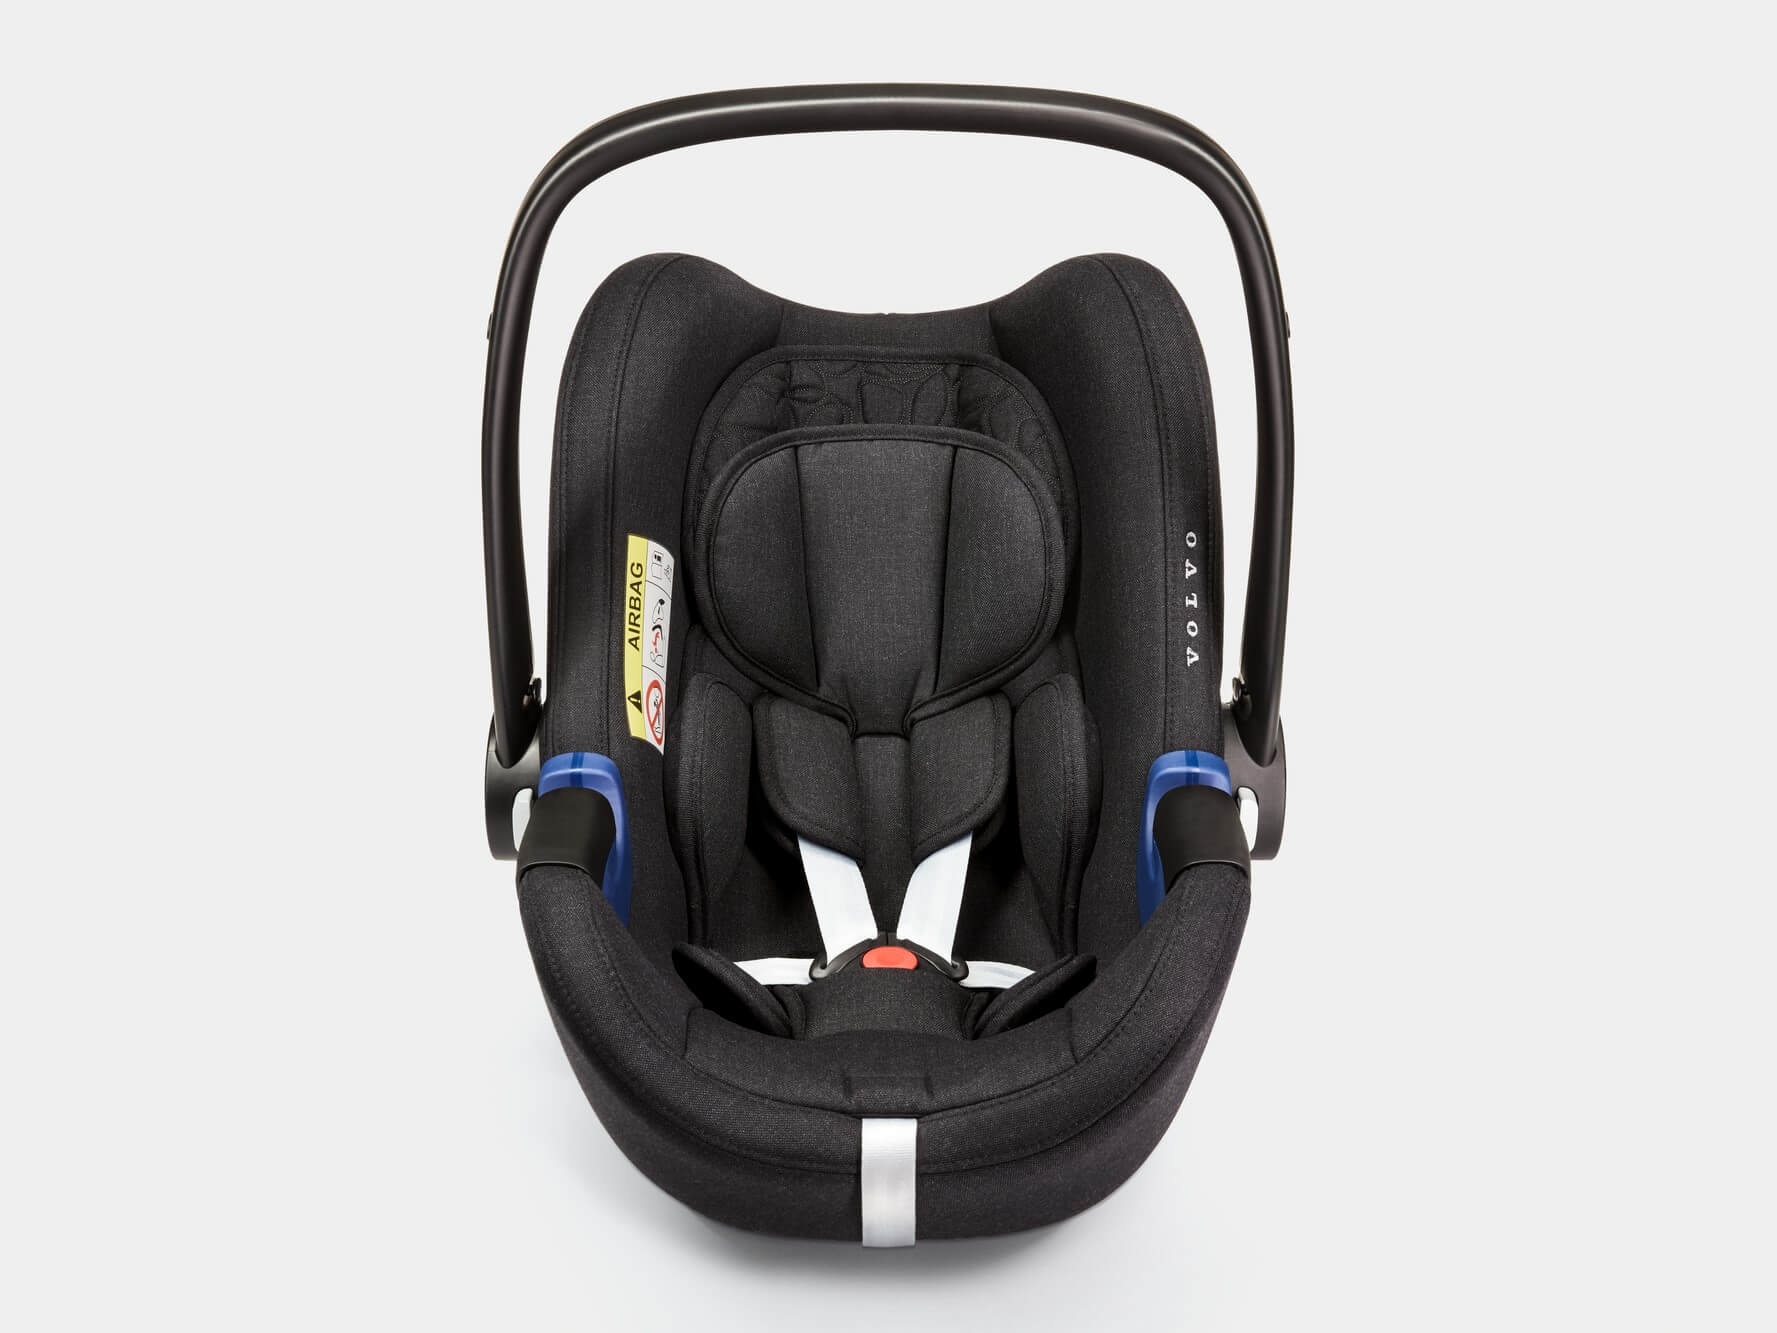 Volvo barnestol til spædbørn, der måler 40-73 cm.